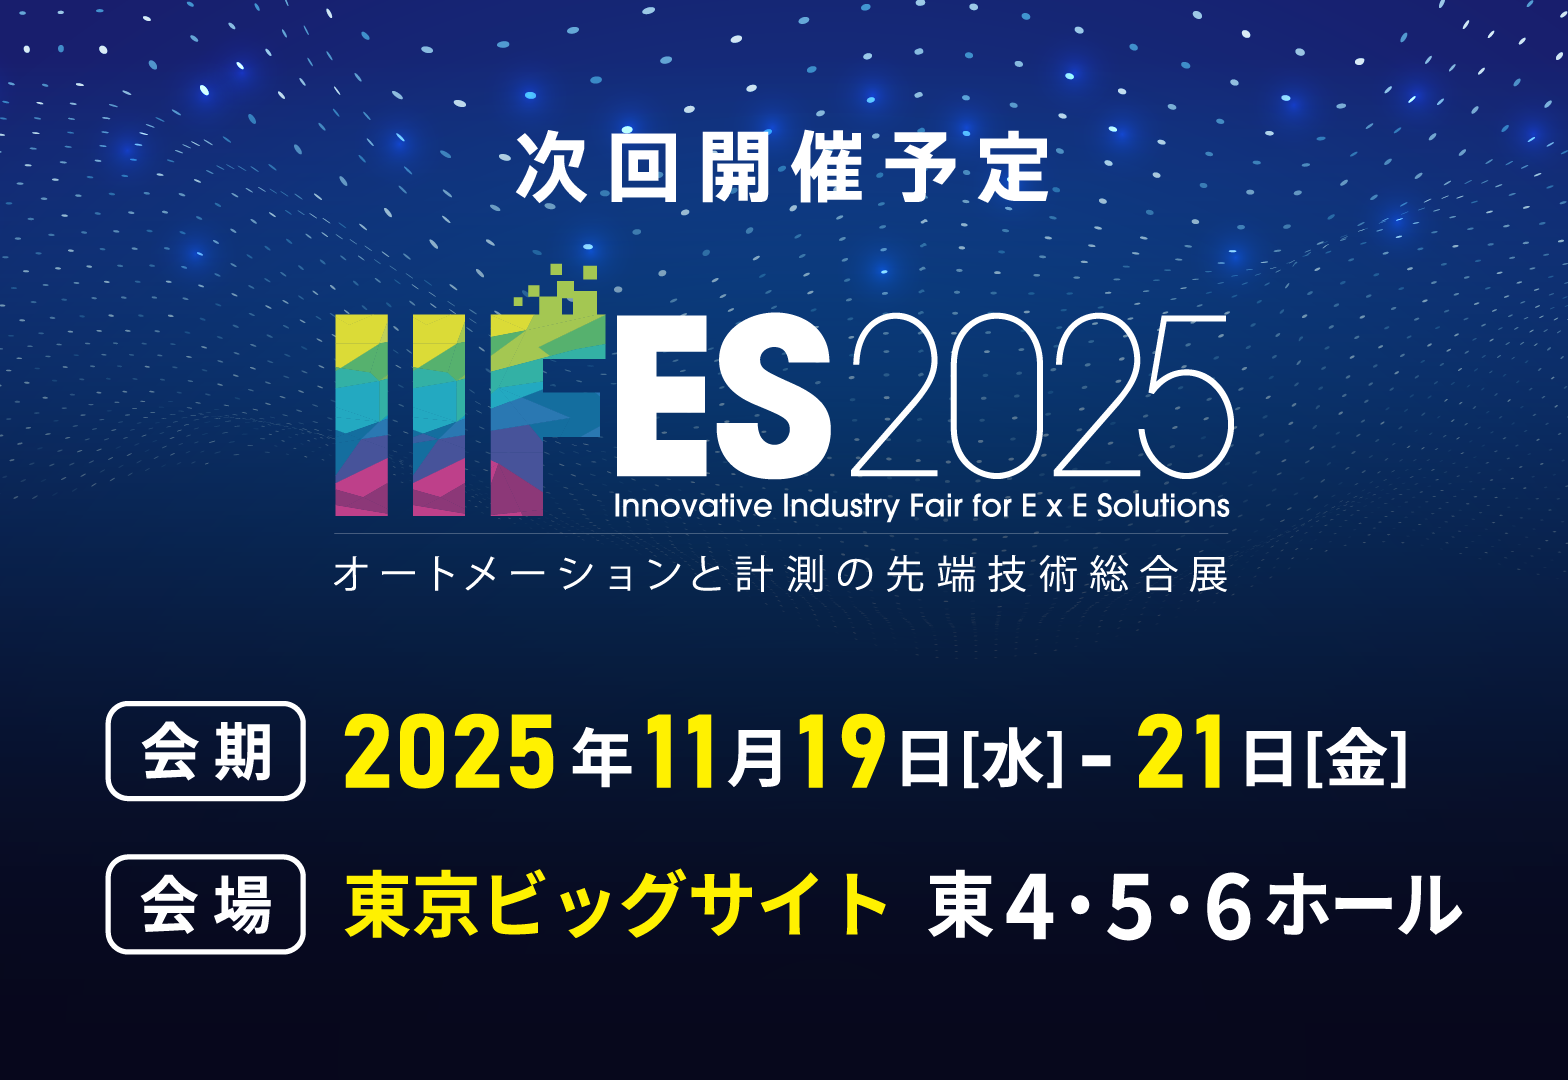 次回開催予定 IIFES2025 オートメーションと計測の先端技術総合展 会期：2025年11月19日（水）～21日（金） 会場：東京ビッグサイト 東4・5・6ホール